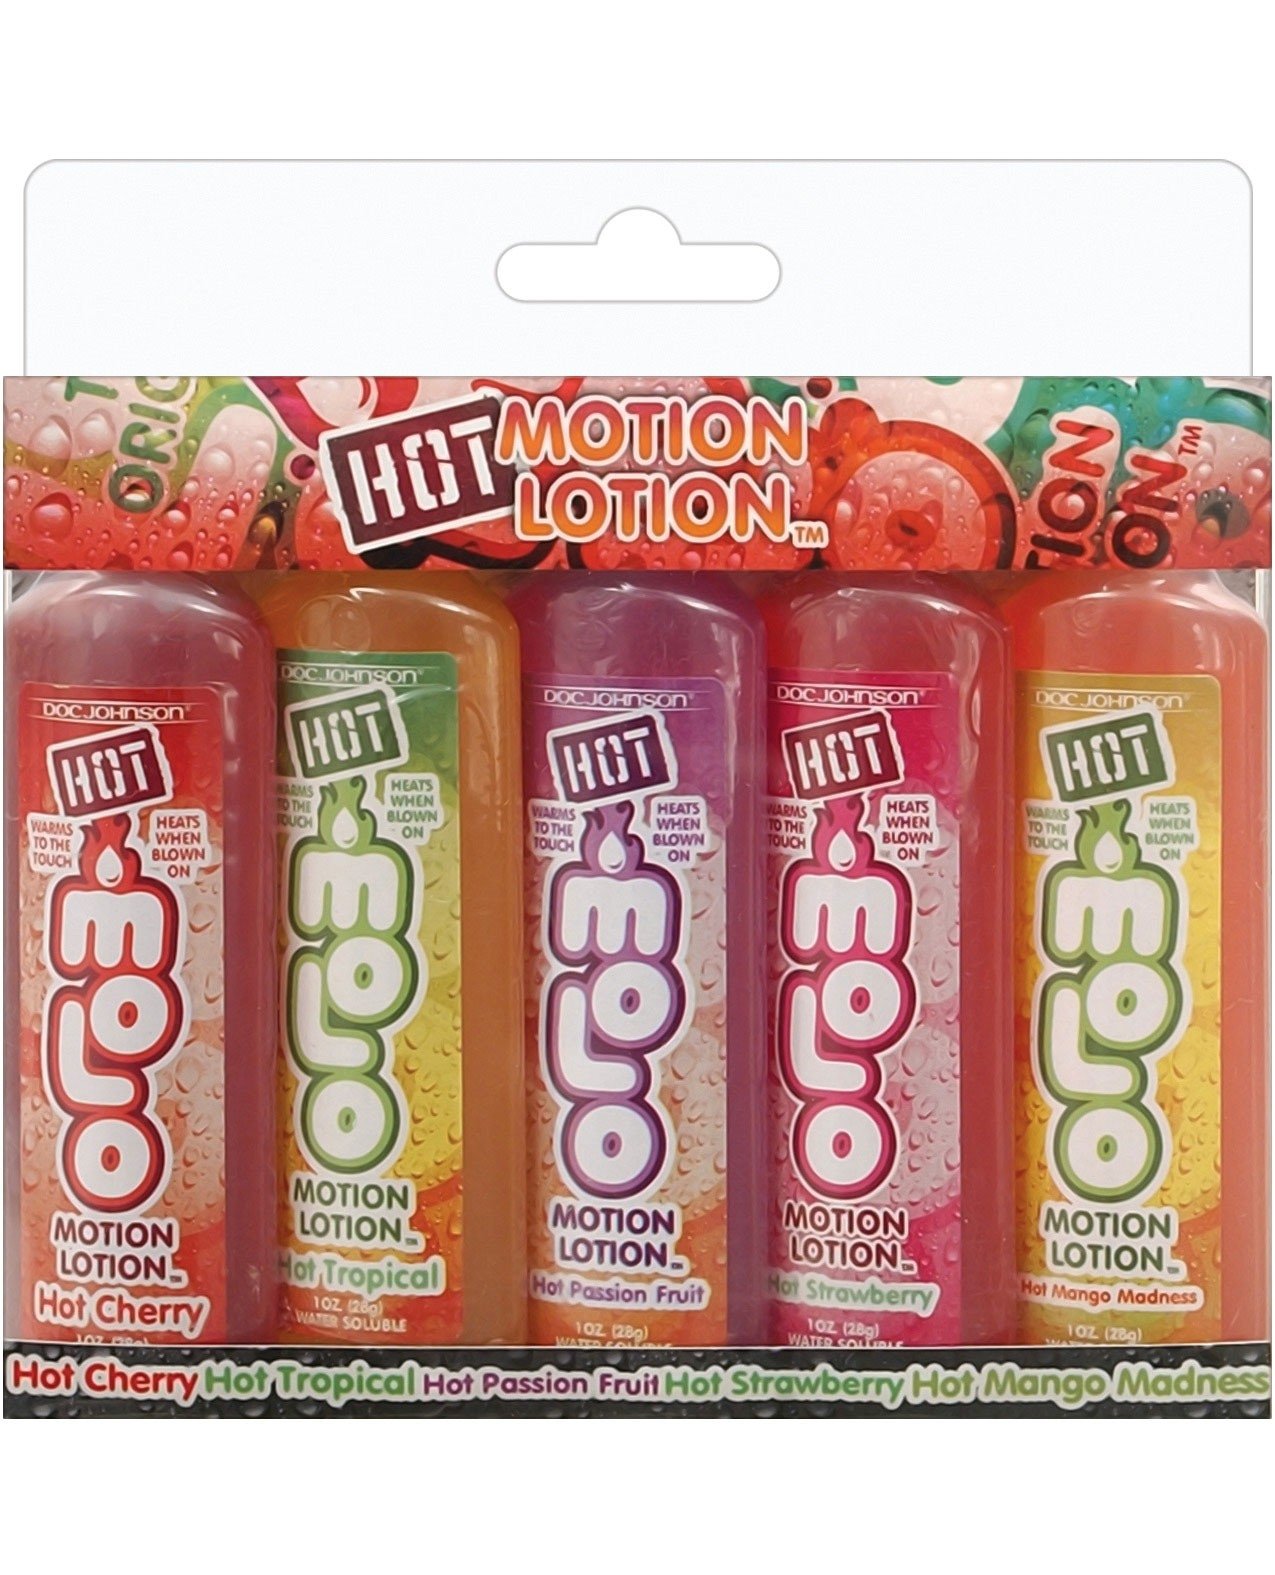 Hot Motion Lotion 1 Oz Bottle Asst Flavors By Doc Johnson Cupid S Lingerie